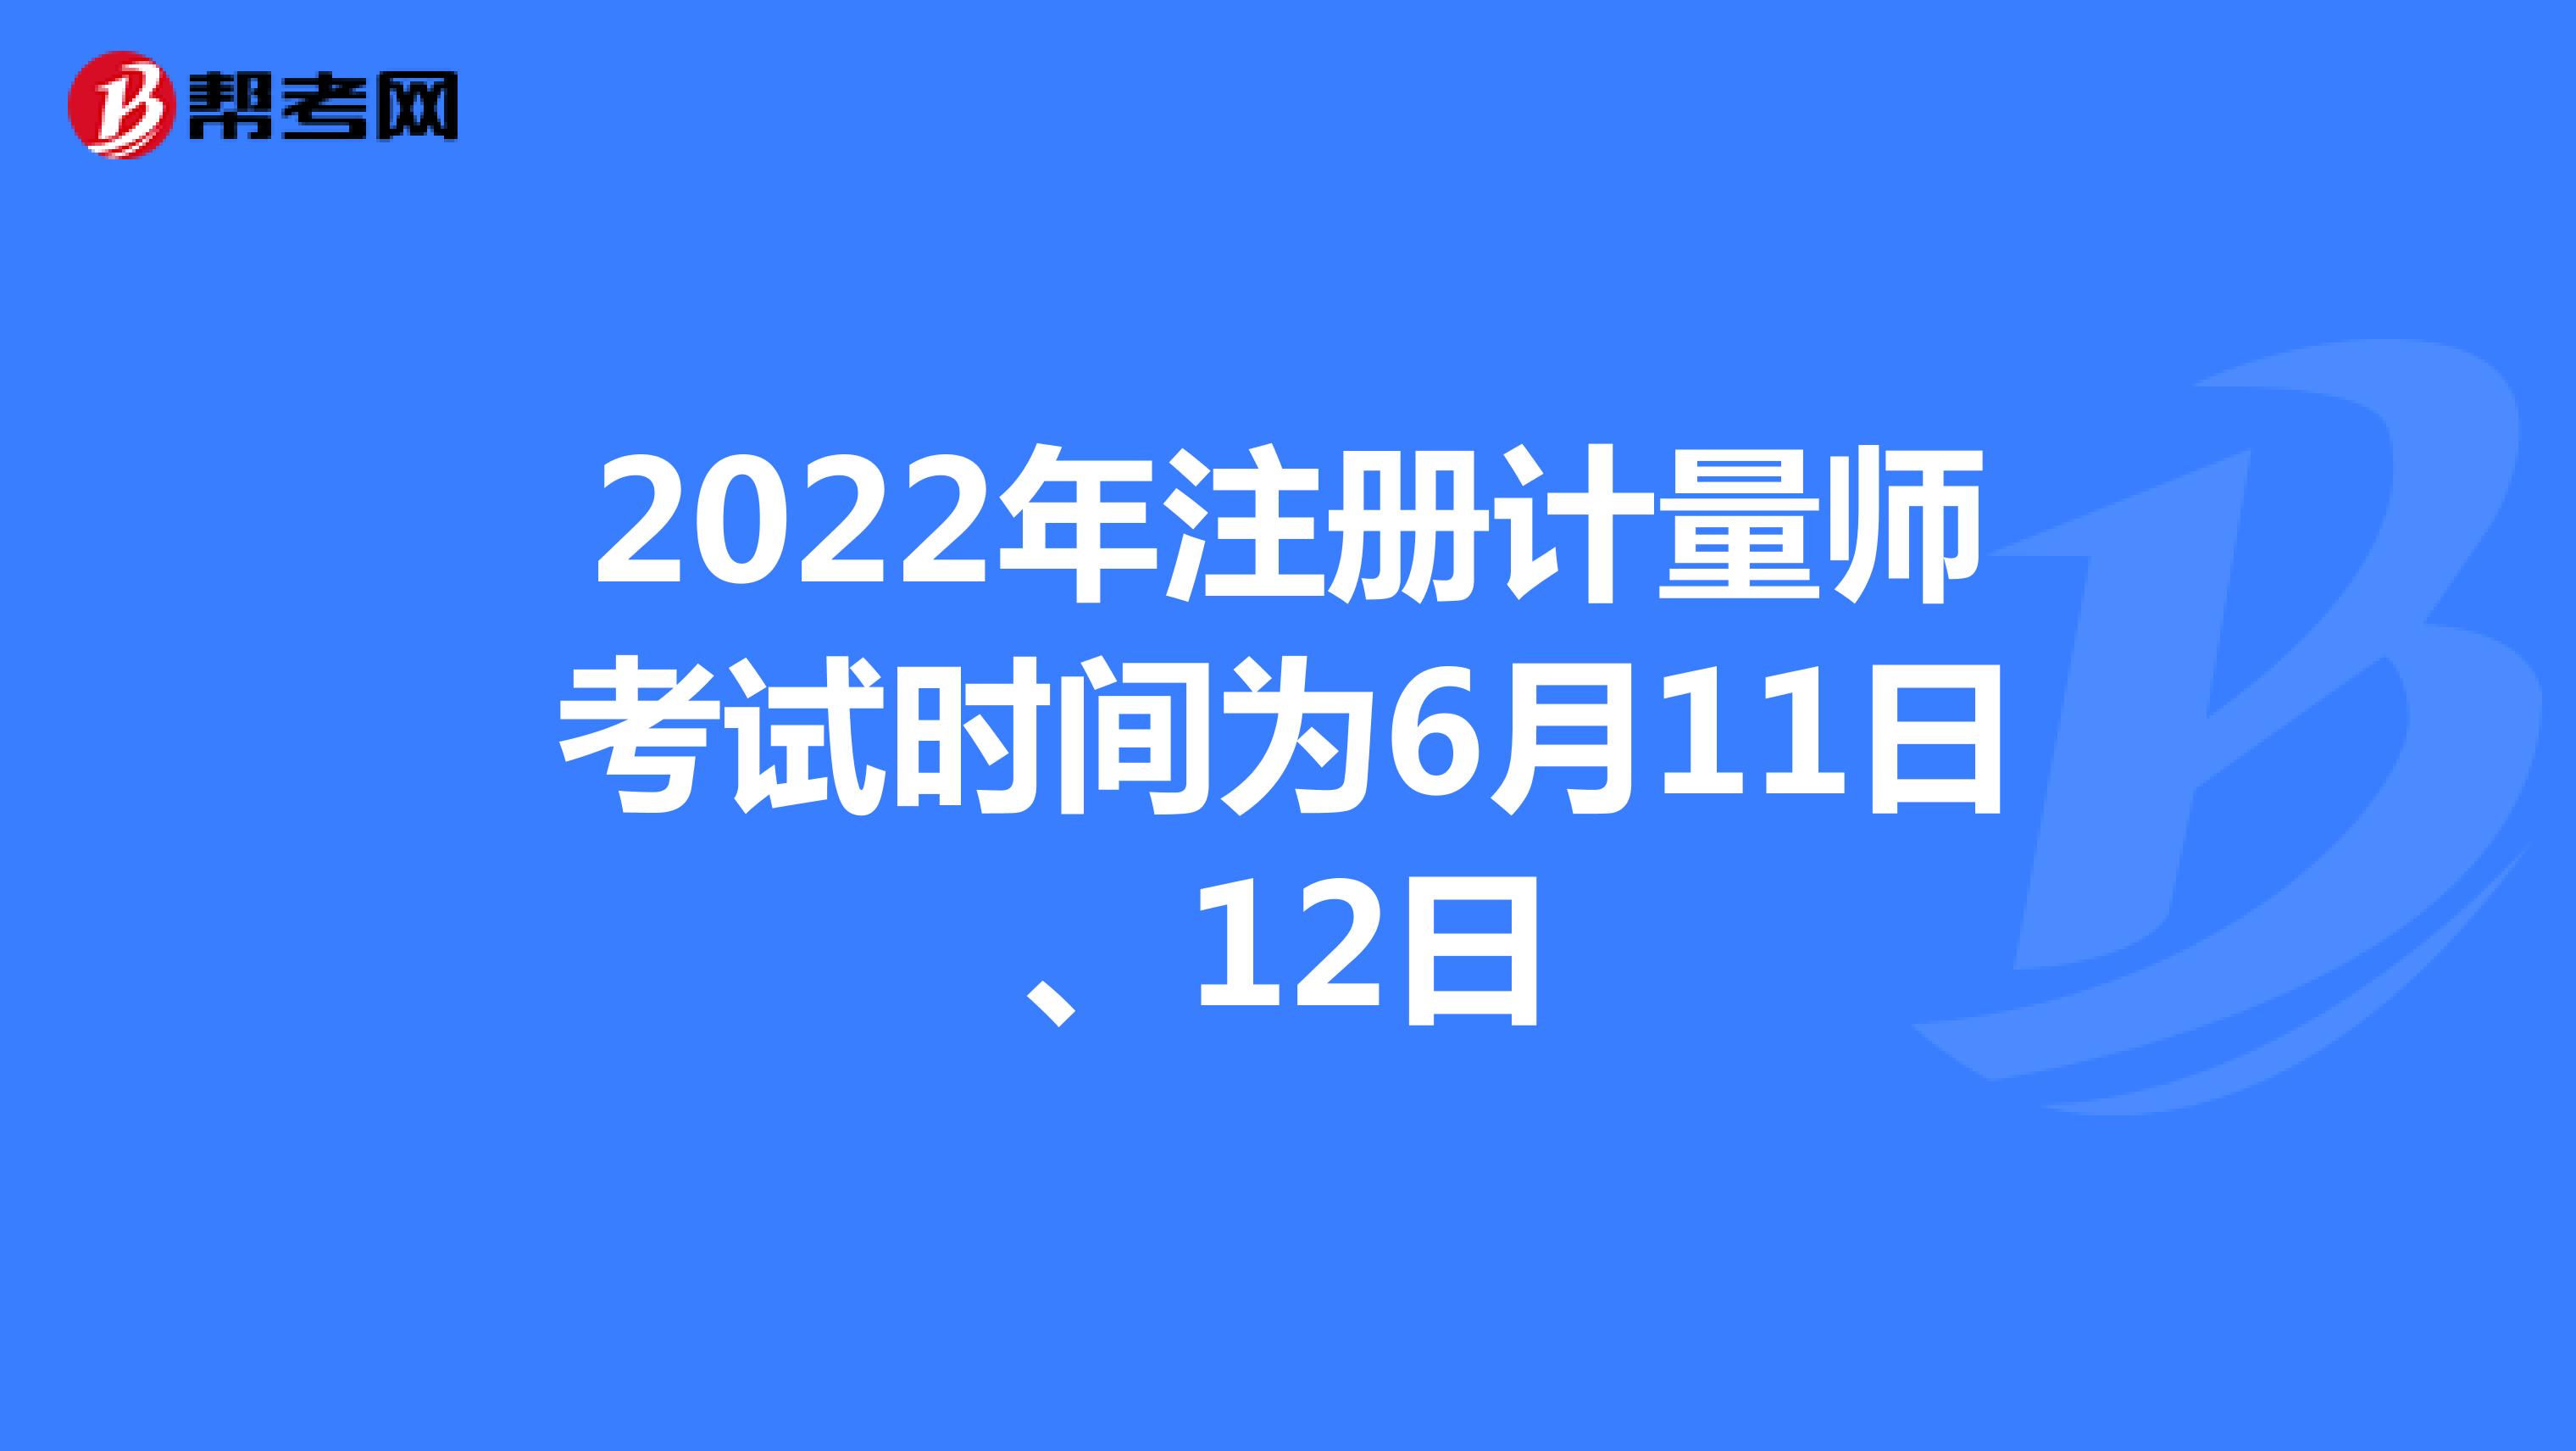 2022年注册计量师考试时间为6月11日、12日